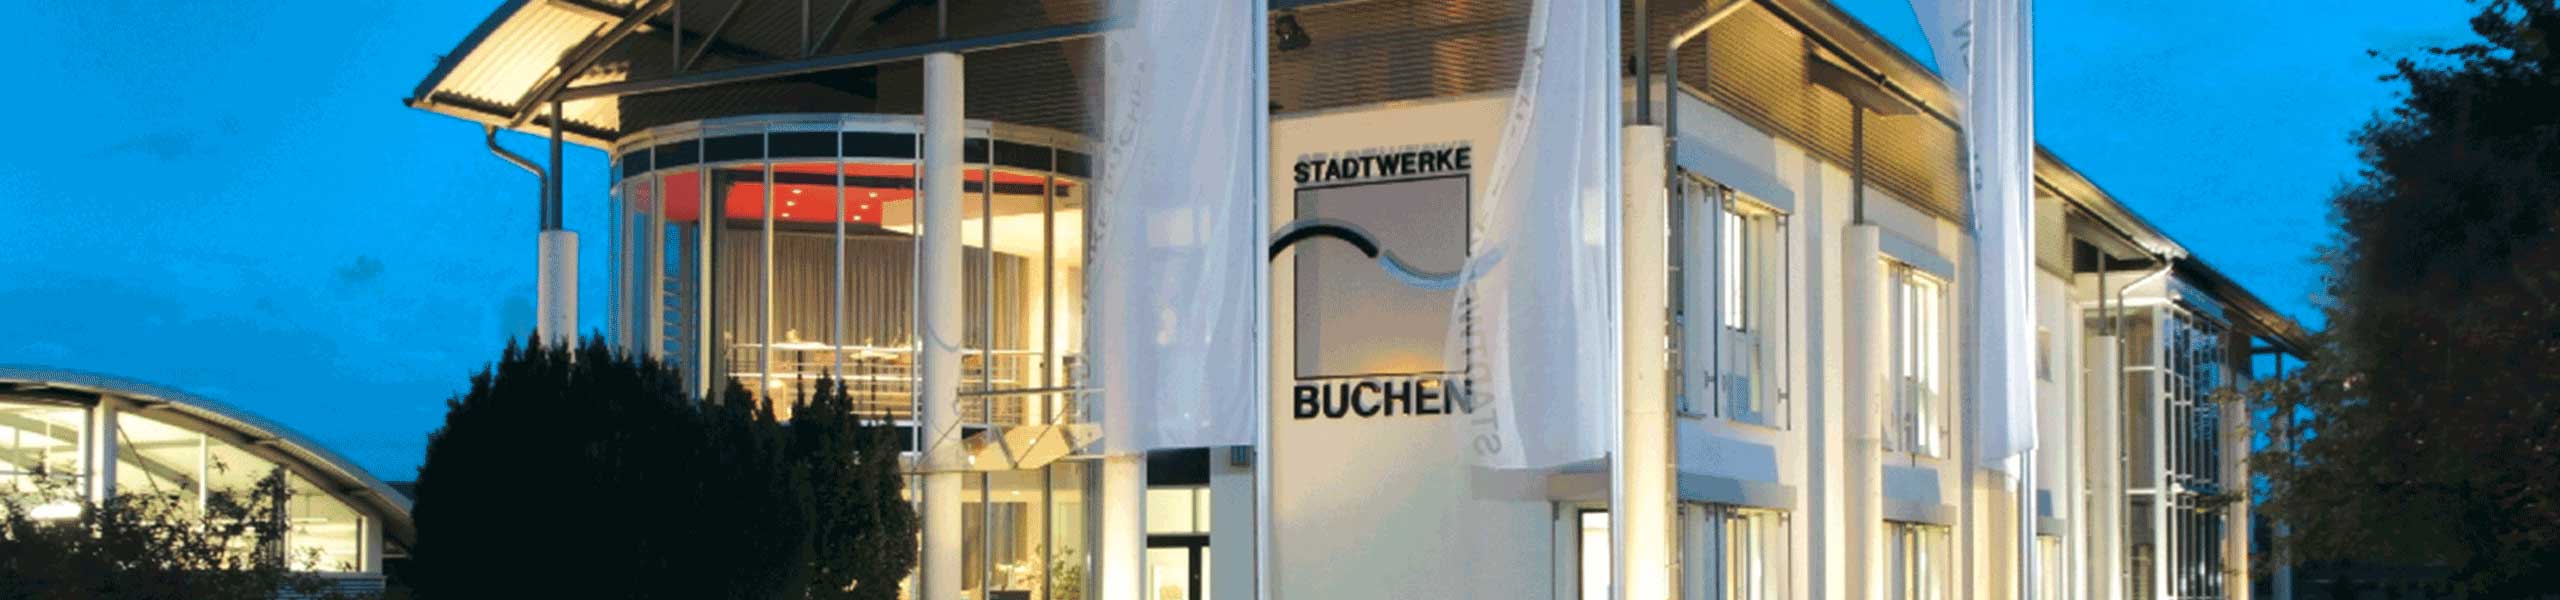 Stadtwerke Buchen GmbH & Co KG - Neue Bademeisterin ergänzt das Buchener Schwimmbadteam